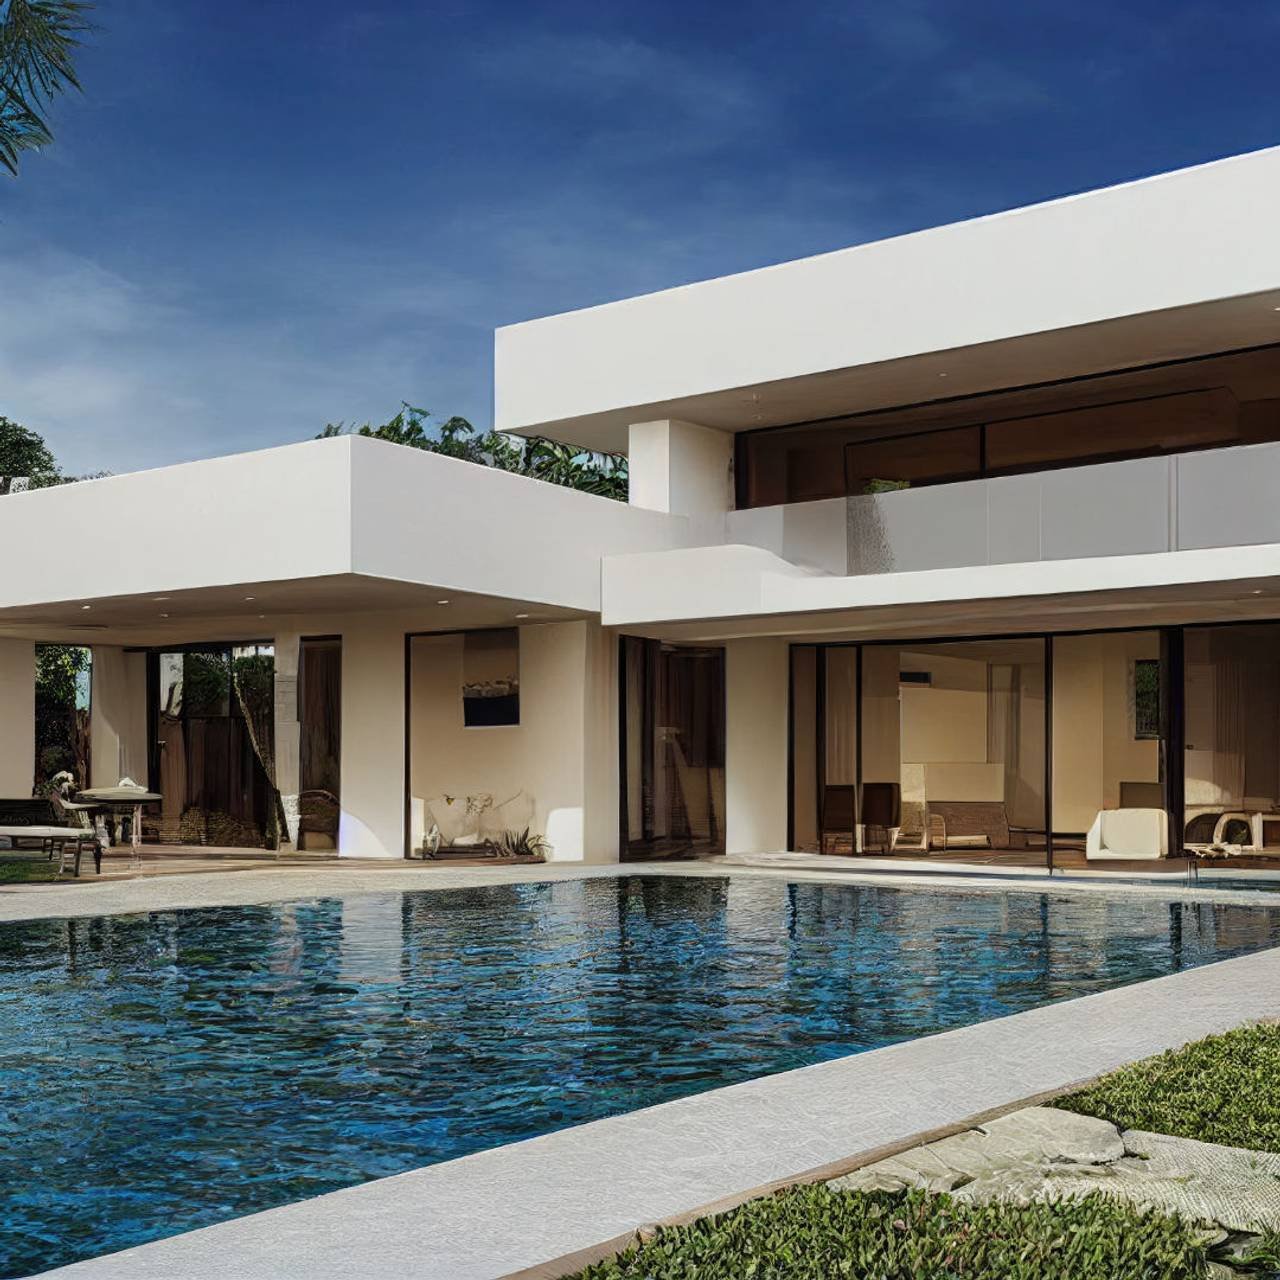 villa de luxo com piscina espetacular design contemporâneo arte digital imobiliária casa